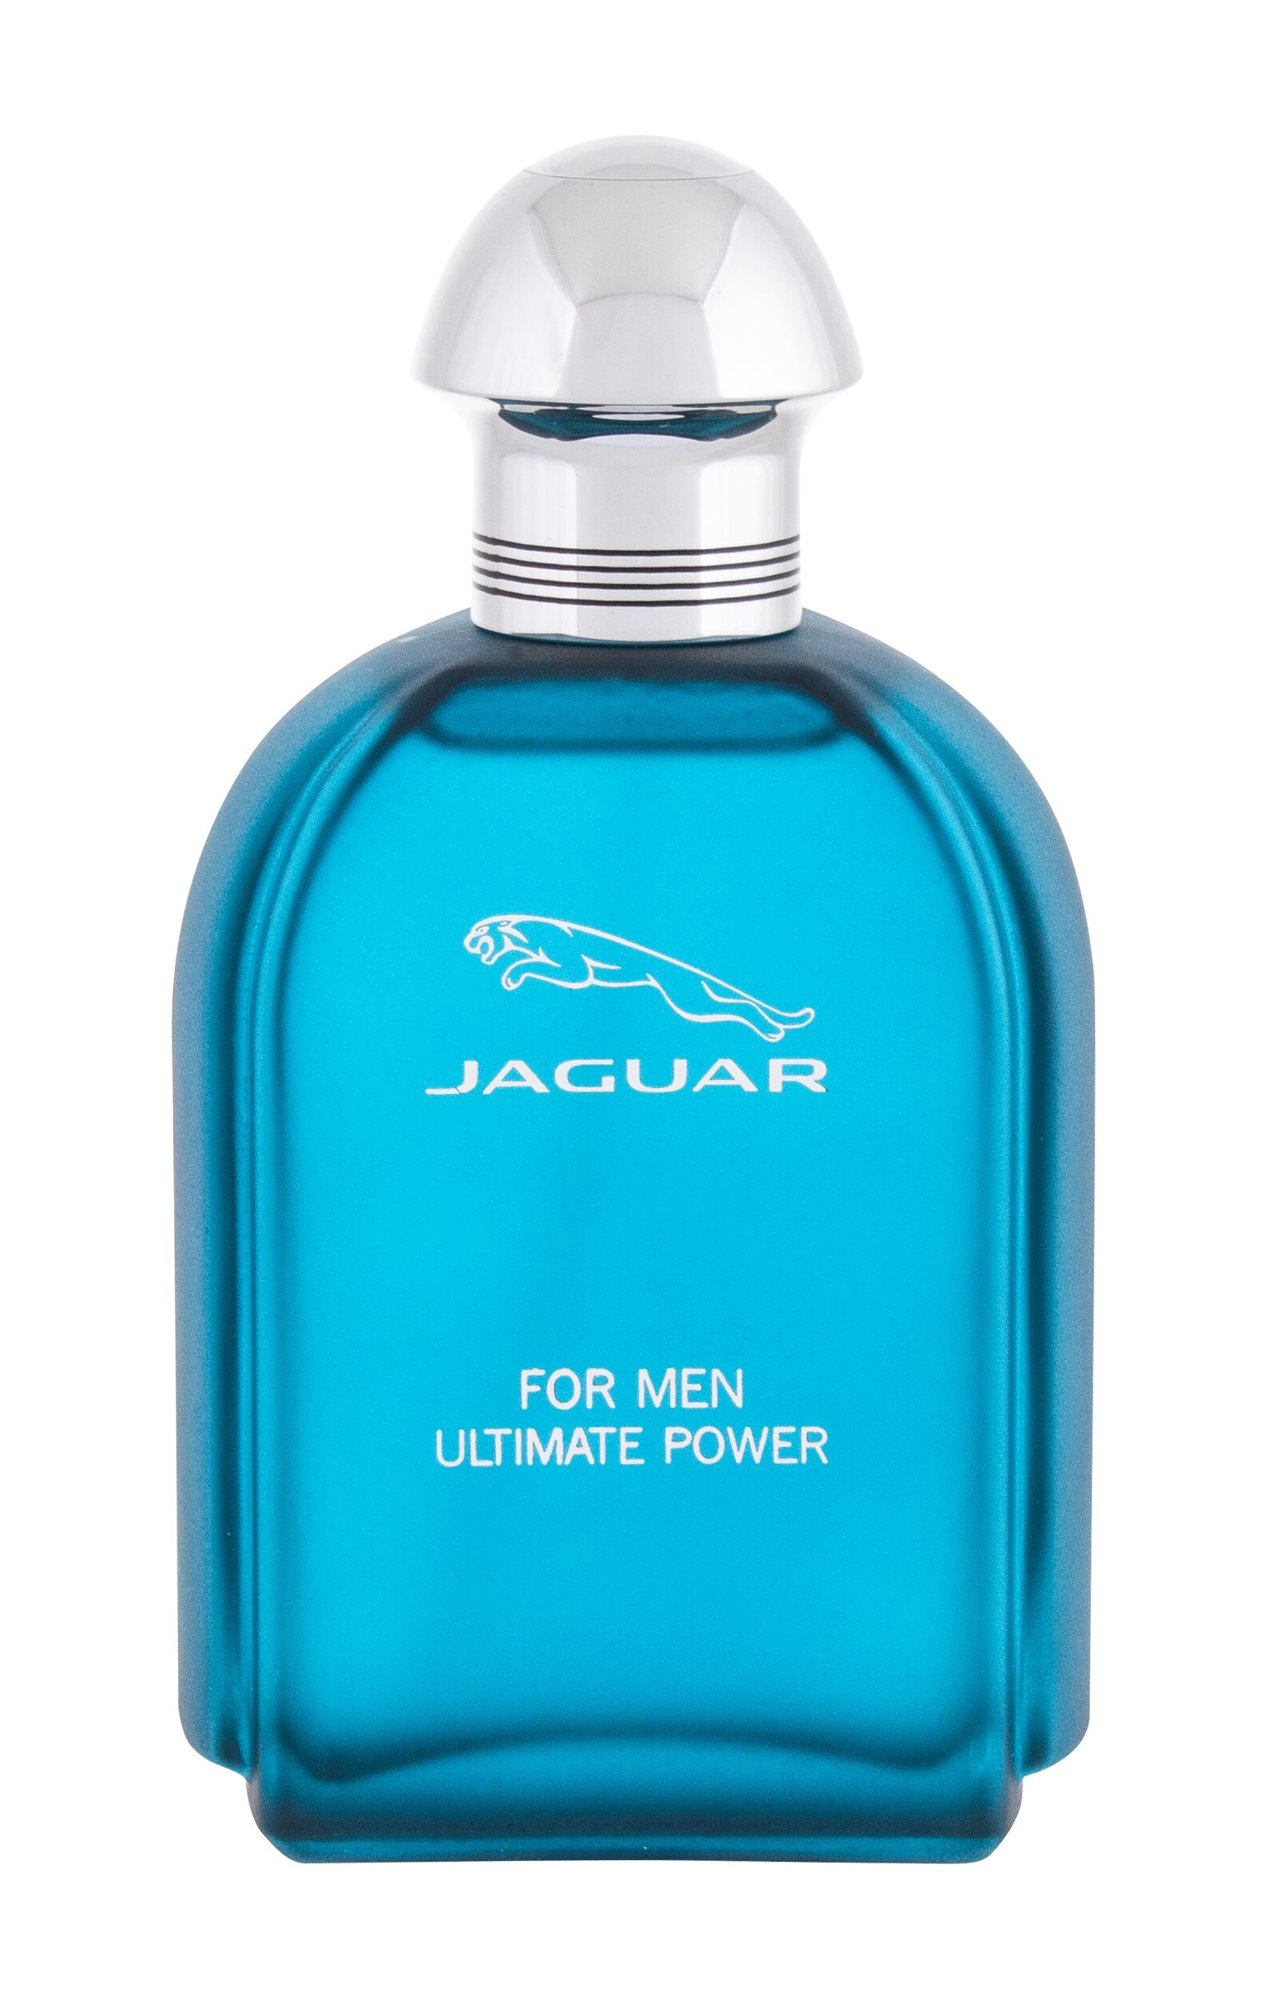 Jaguar For Men Ultimate Power, edt 100ml